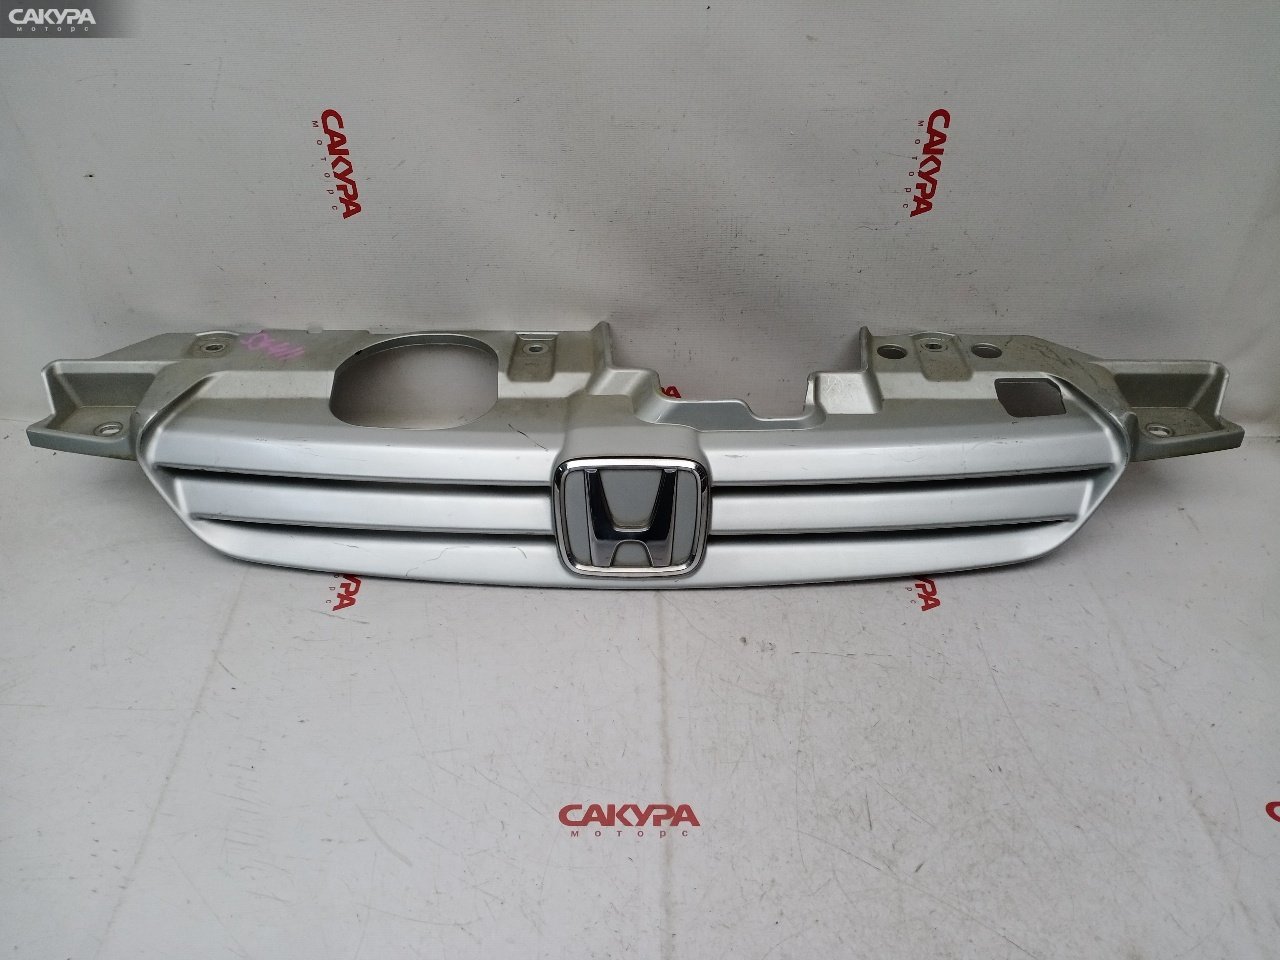 Решетка радиатора Honda Capa GA4 D15B: купить в Сакура Красноярск.